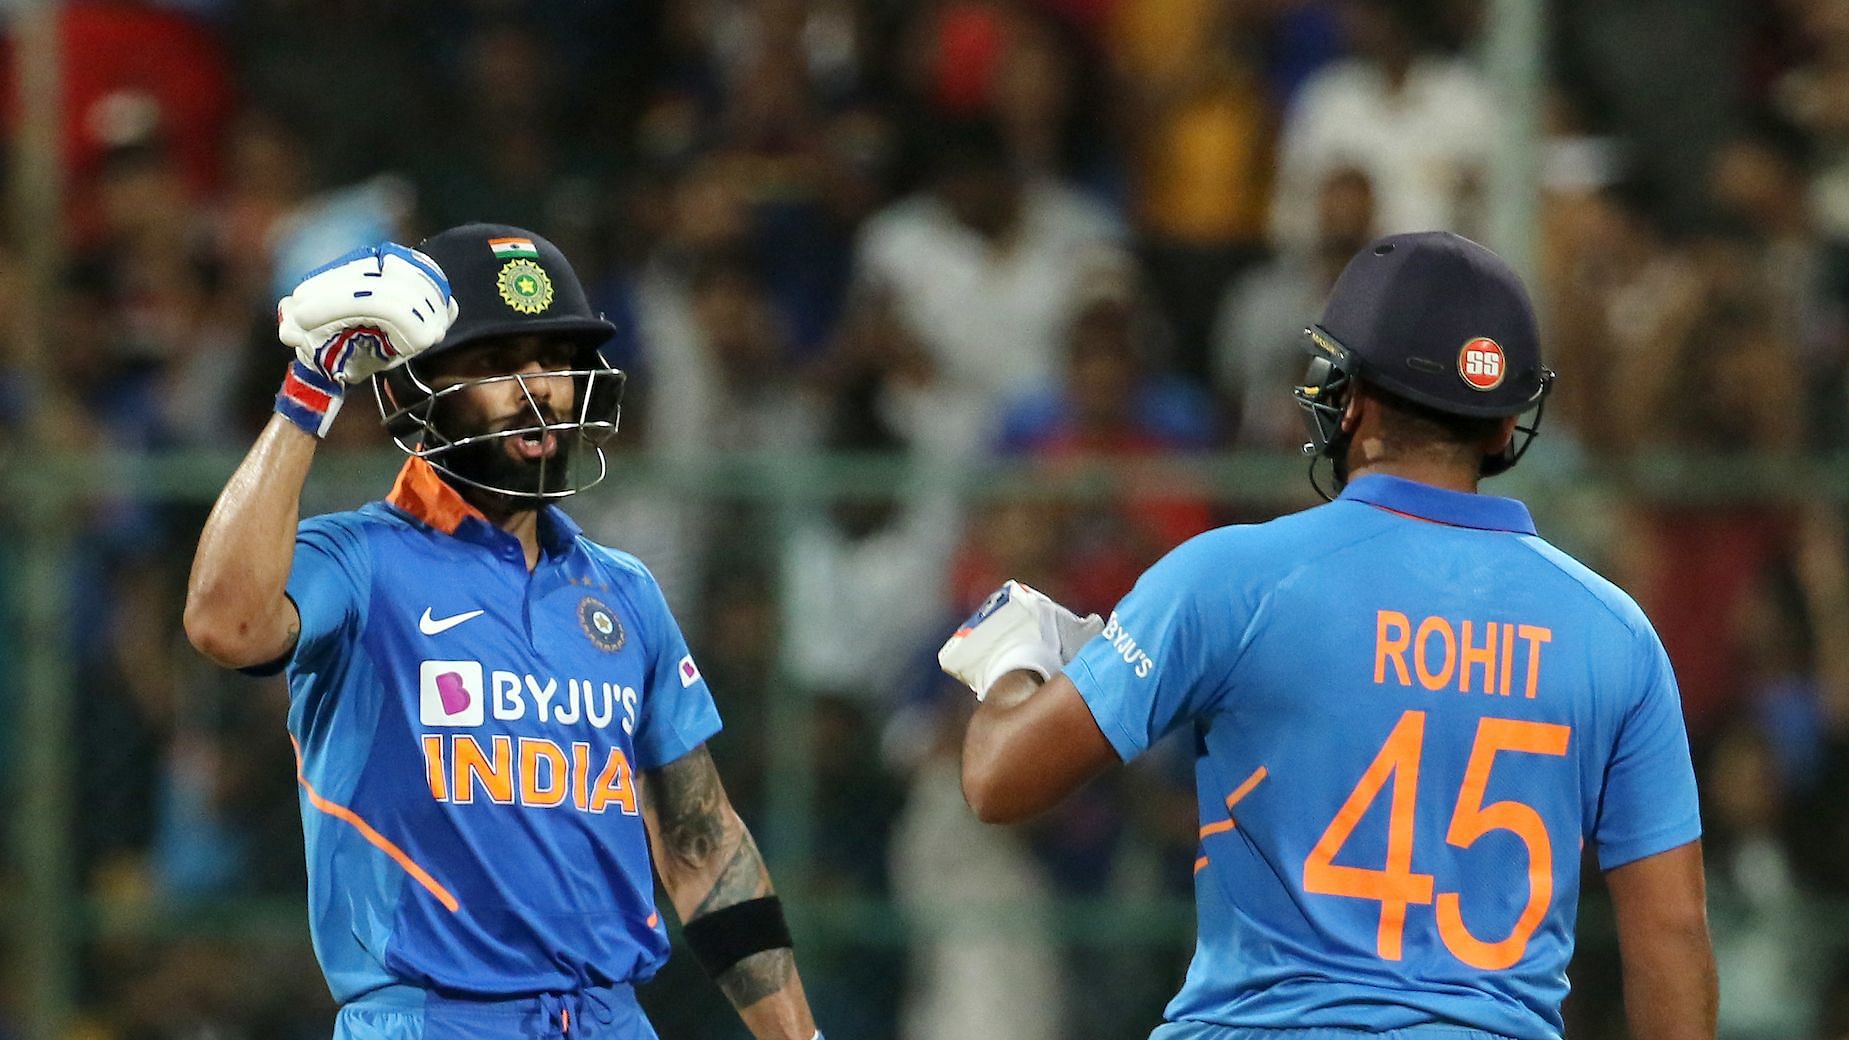 Live updates from the India vs Australia 3rd ODI in Bengaluru.